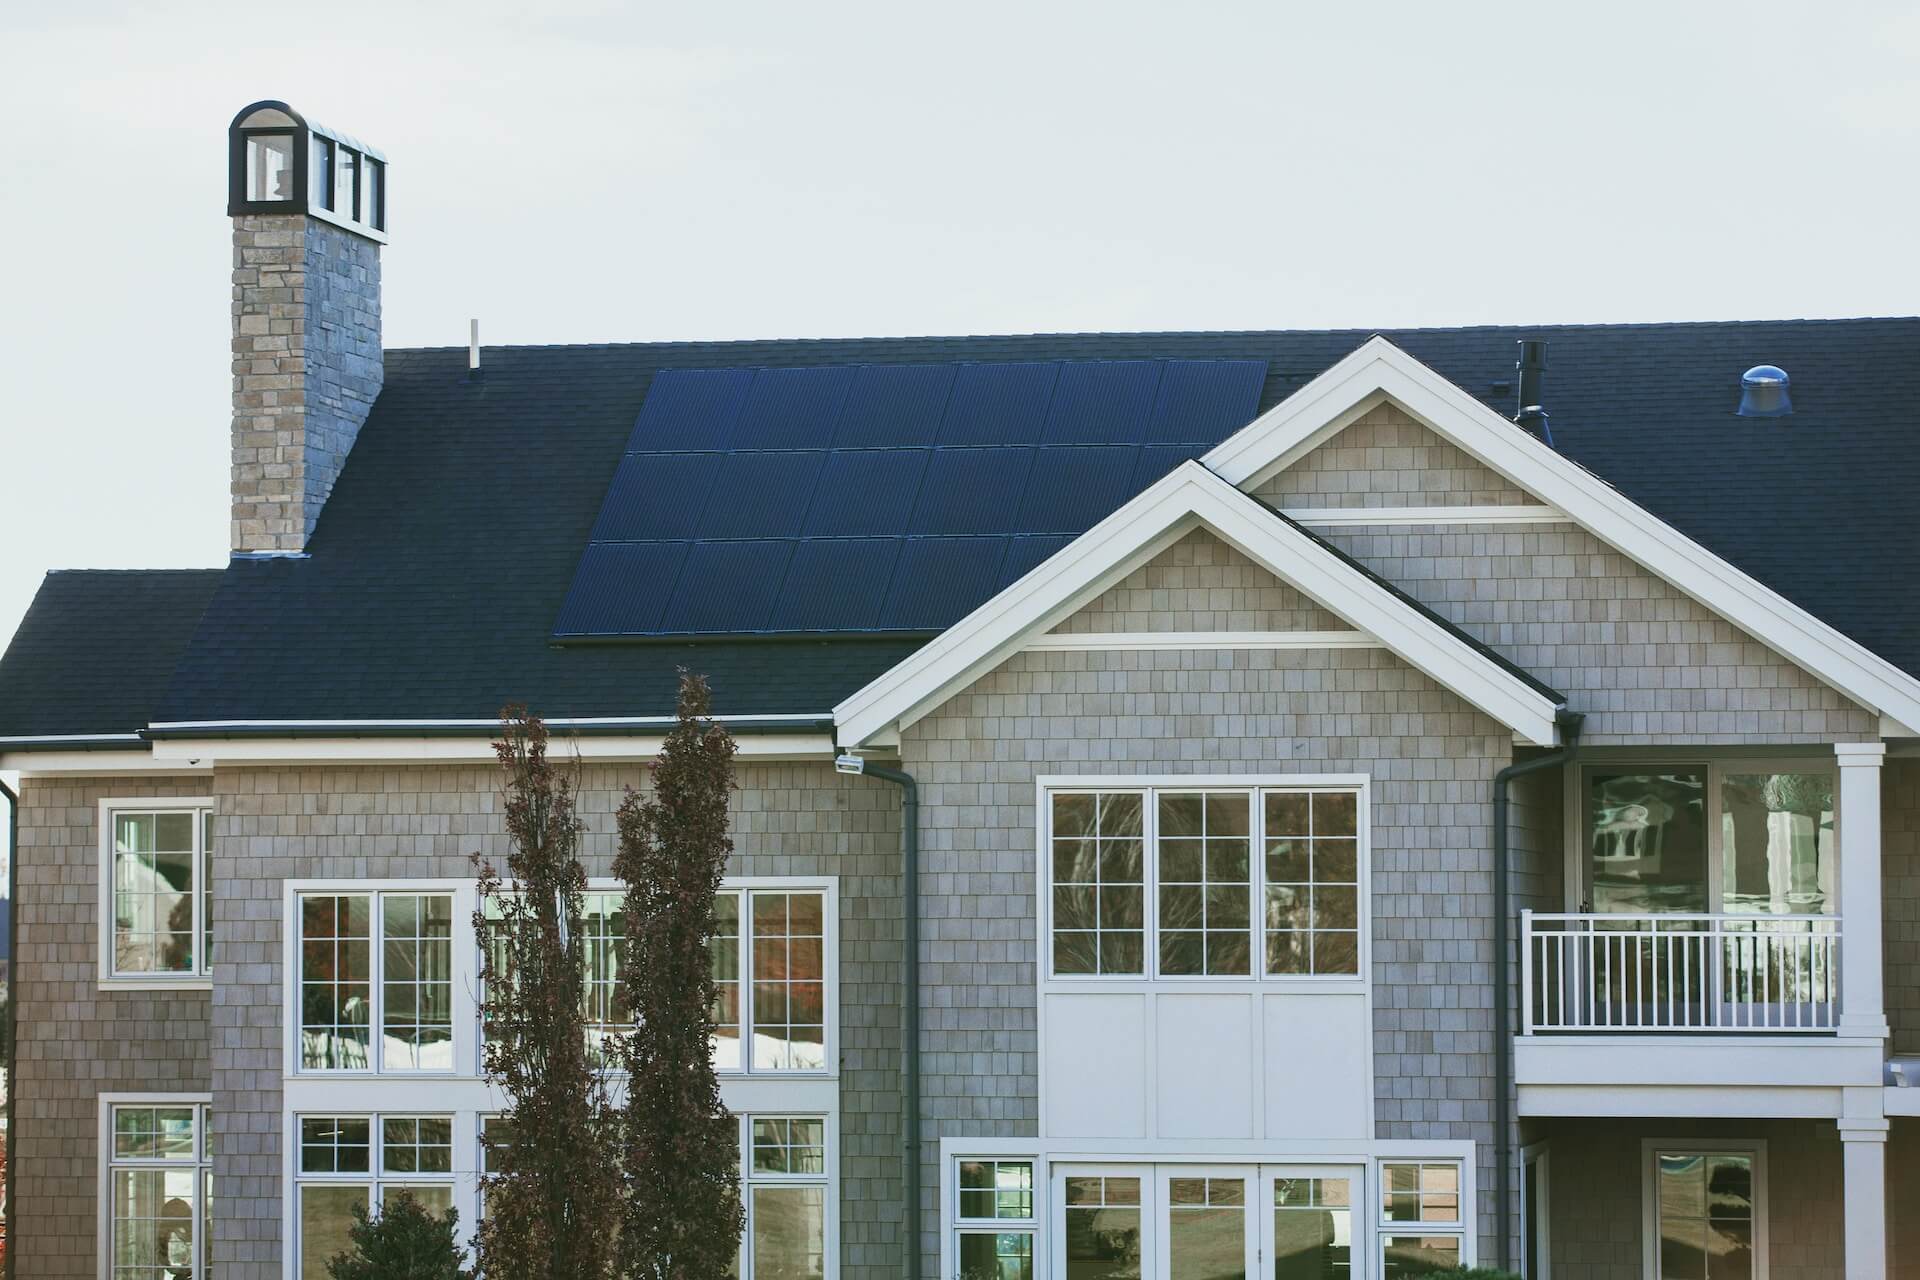 Cate panouri solare sunt necesare pentru o casa - aspecte de luat in considerare